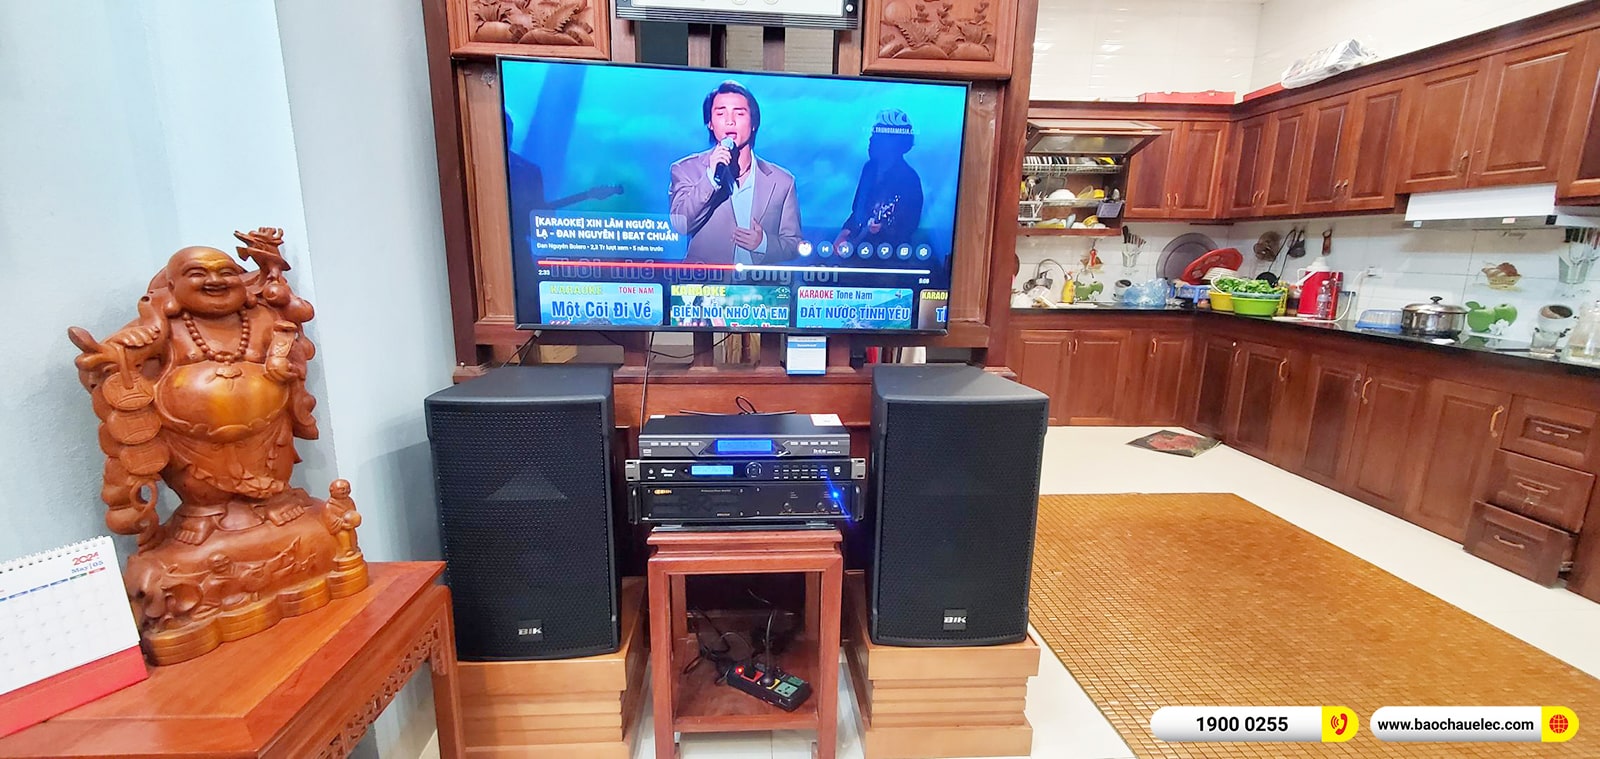 Lắp đặt dàn karaoke BIK gần 28tr cho anh Cường tại Hà Nội 